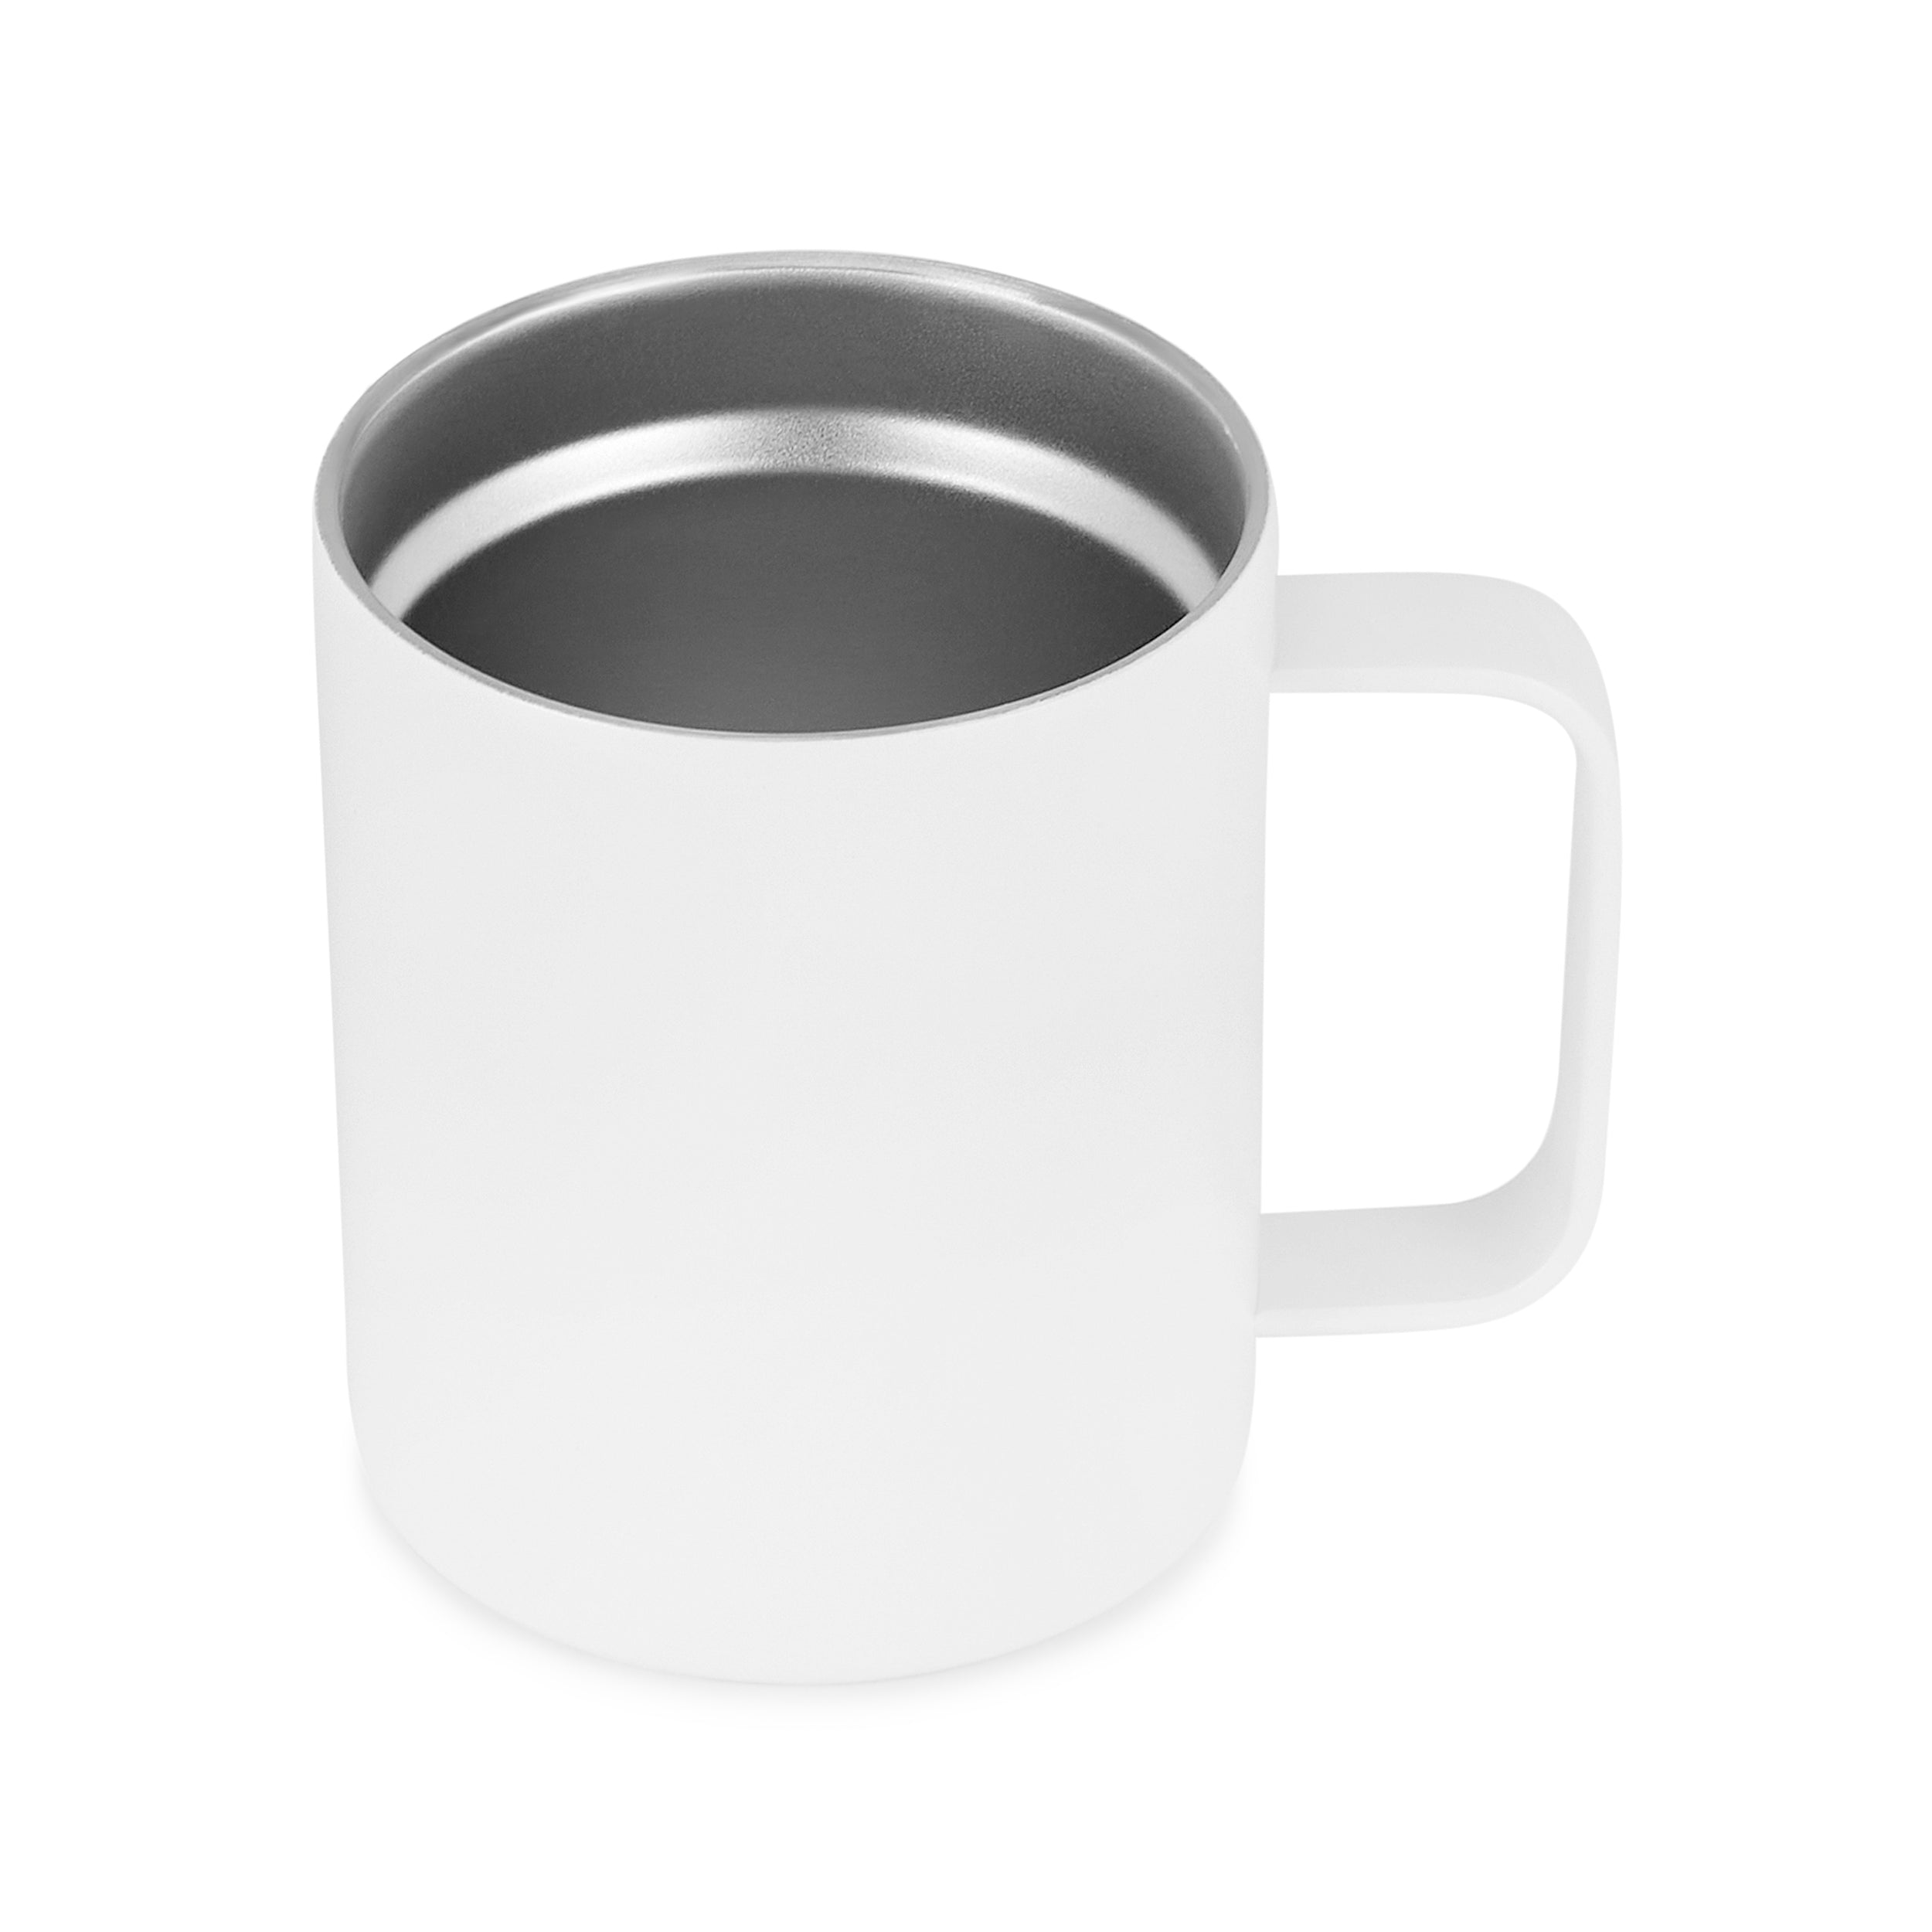 12oz Coffee Mug For Football